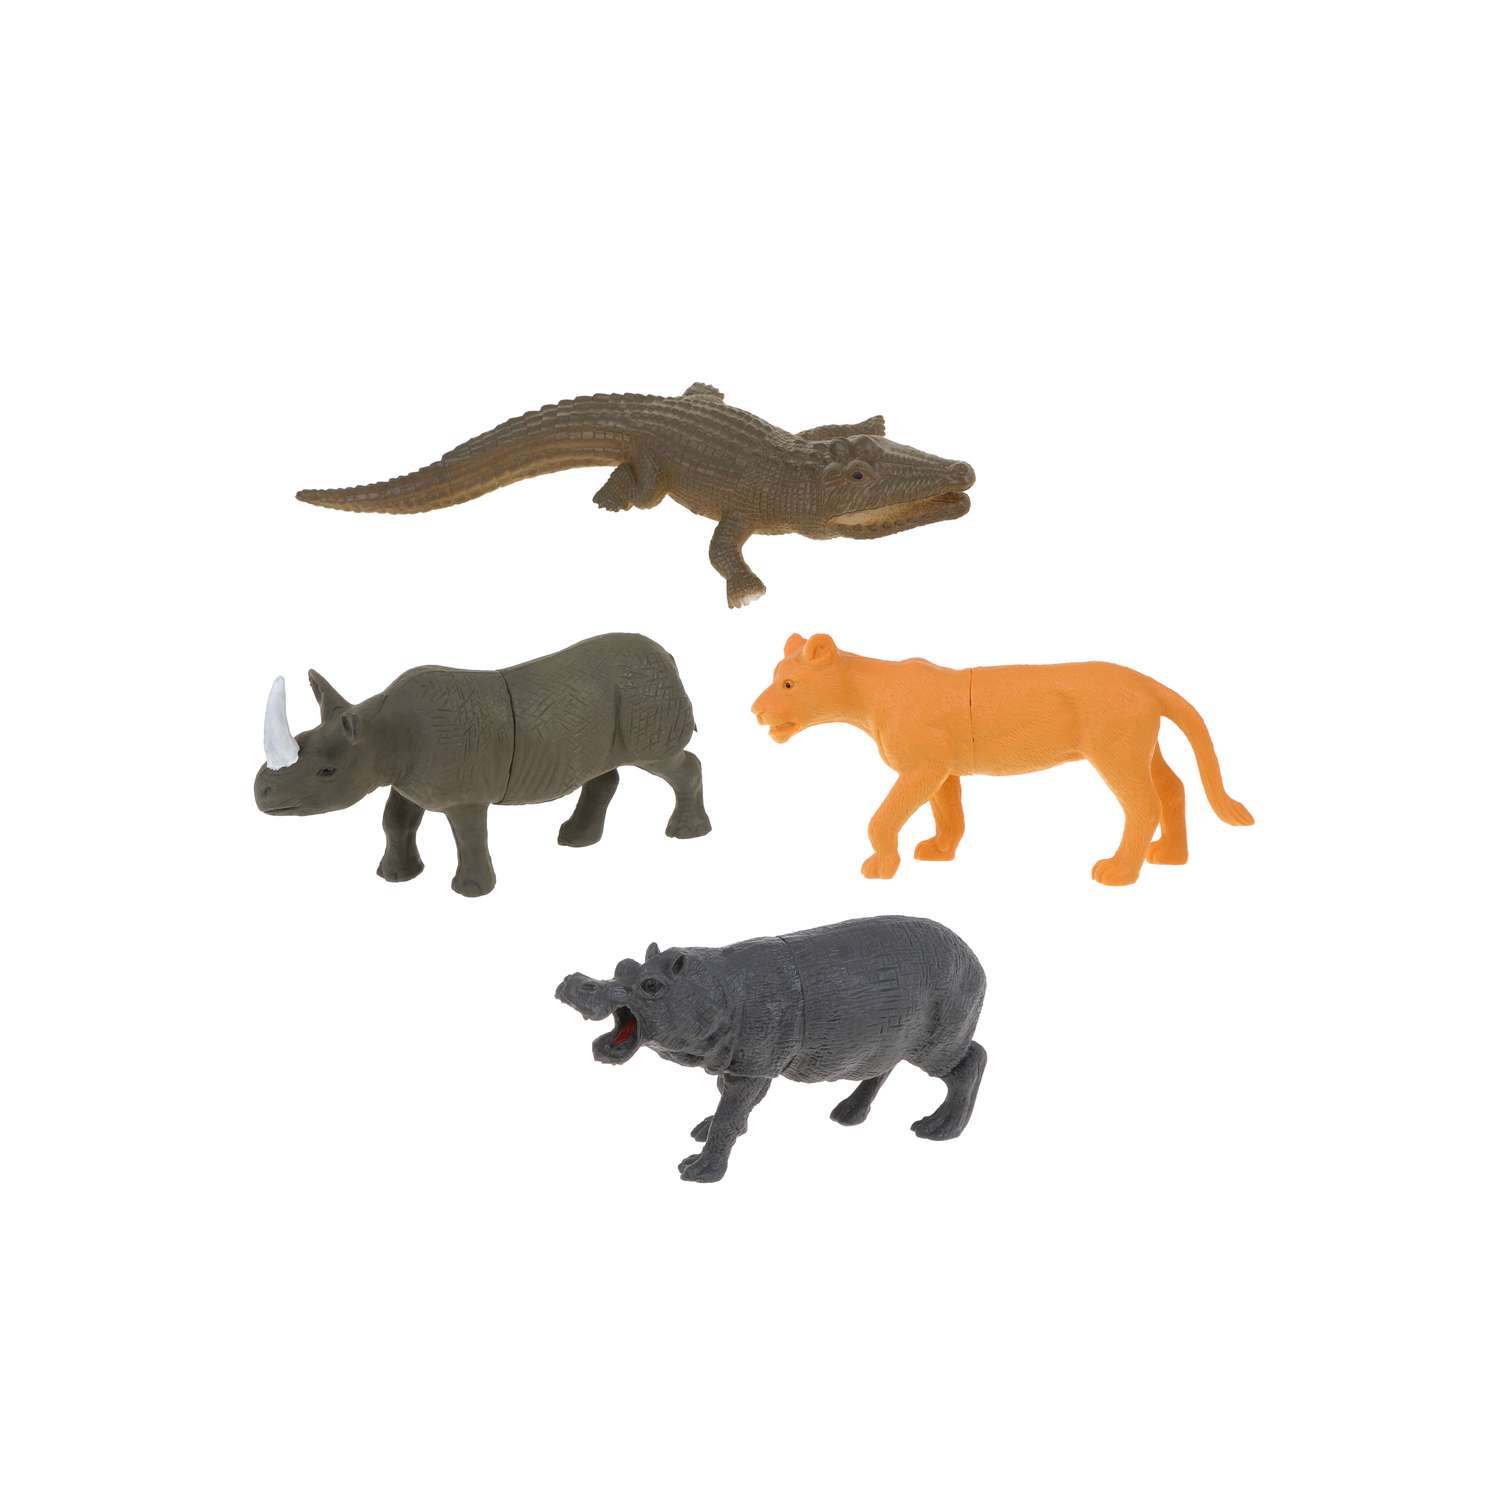 Фигурки животных Диких Наша Игрушка набор игровой для развития и познания 9 см 8 шт - фото 4